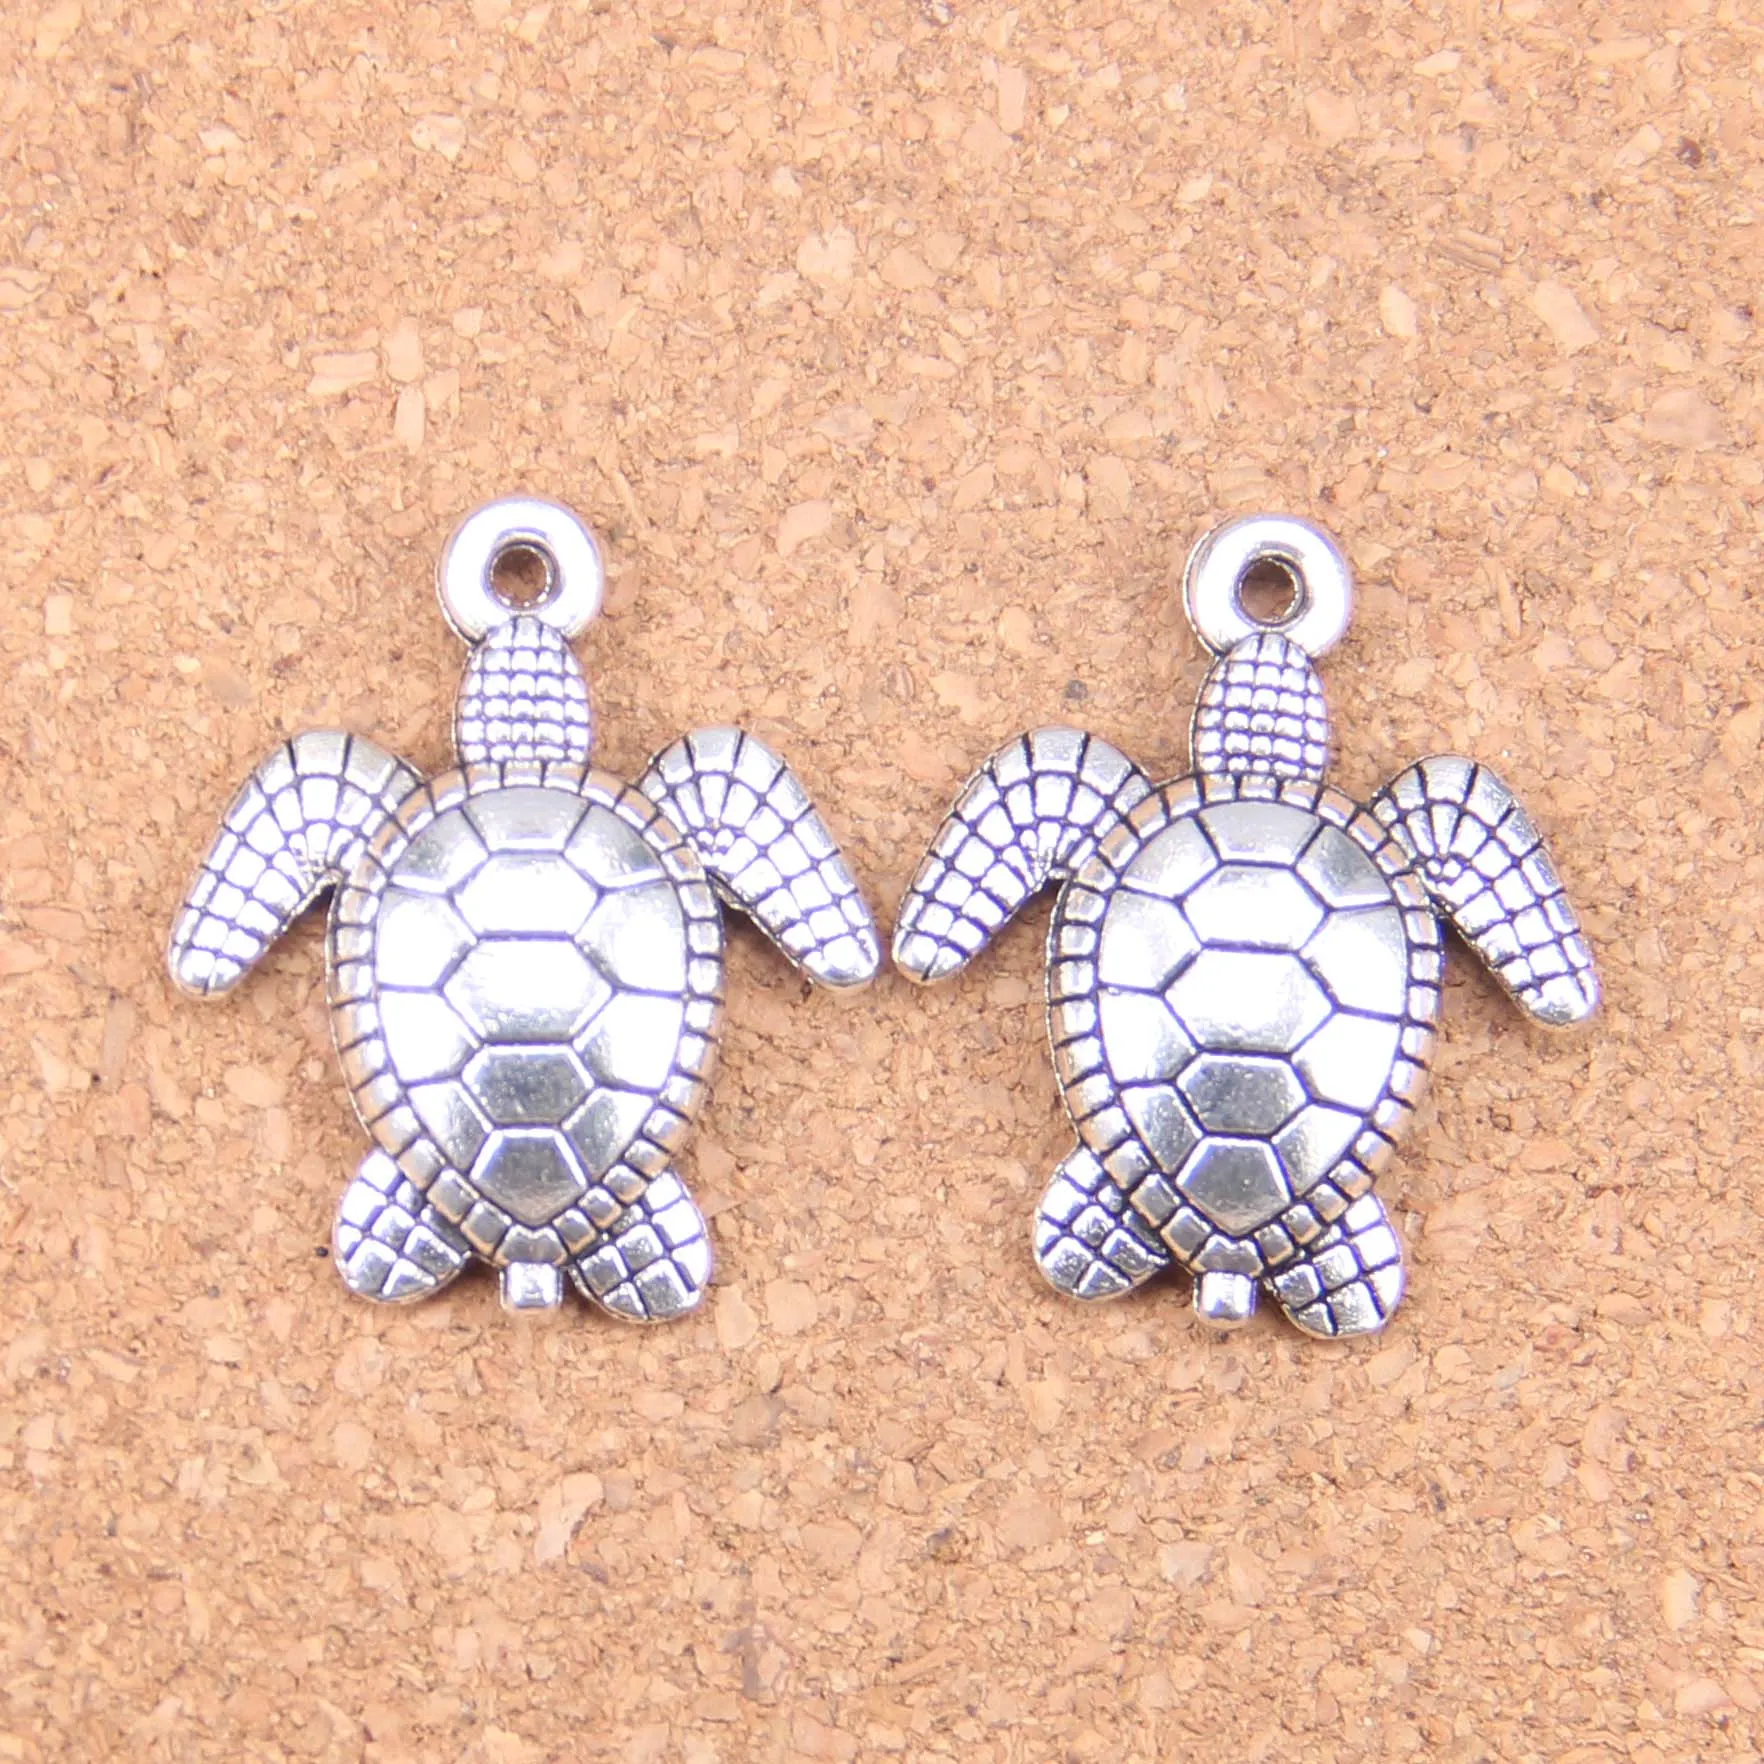 33 pezzi argento antico placcato bronzo tartaruga tartaruga marina ciondolo charms collana fai da te braccialetto braccialetto risultati 26 23mm2490